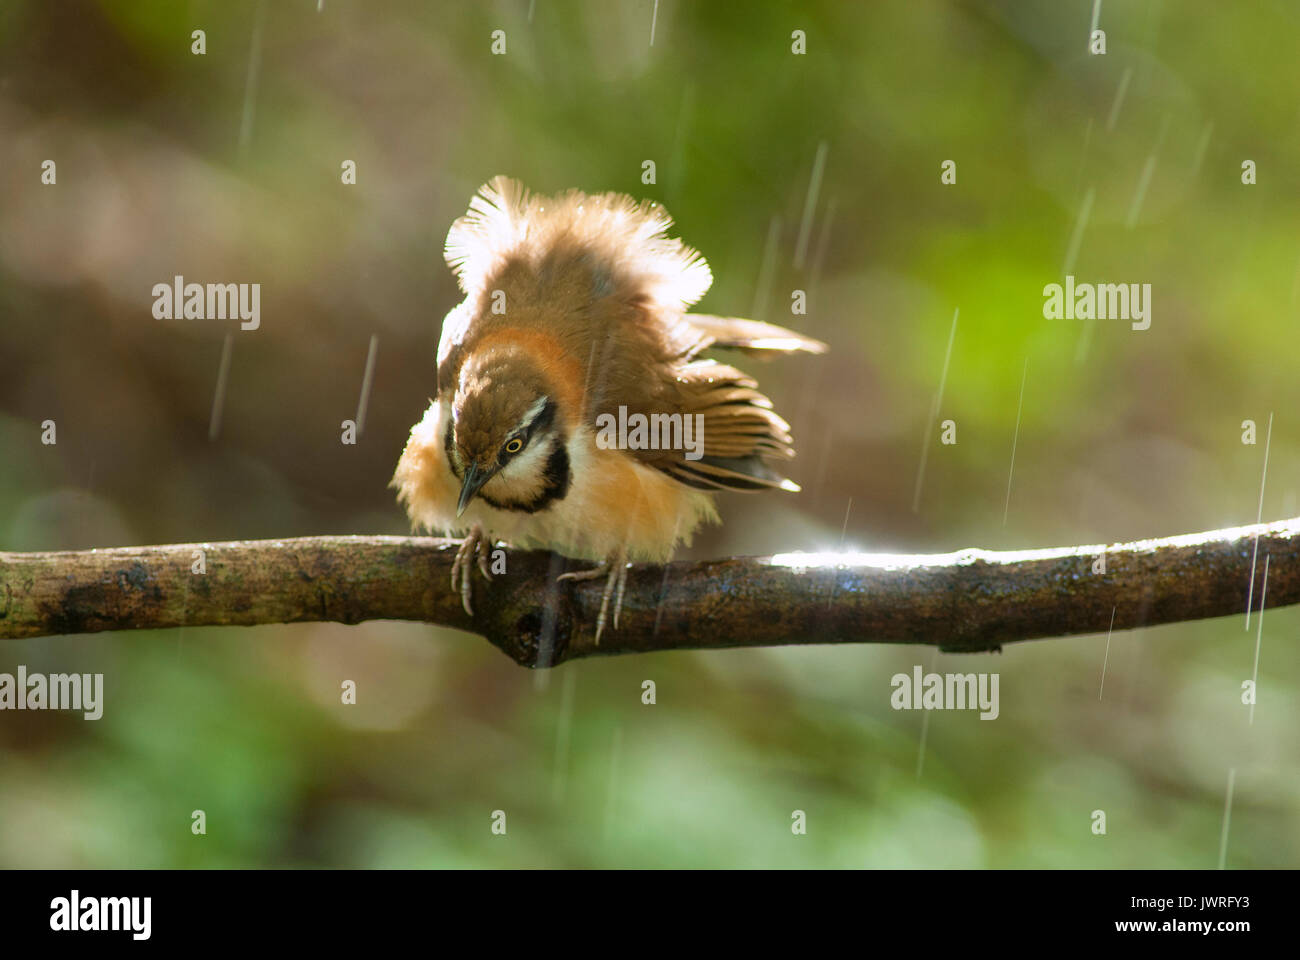 A beautiful bird in the wild Asia.In the rain. Stock Photo